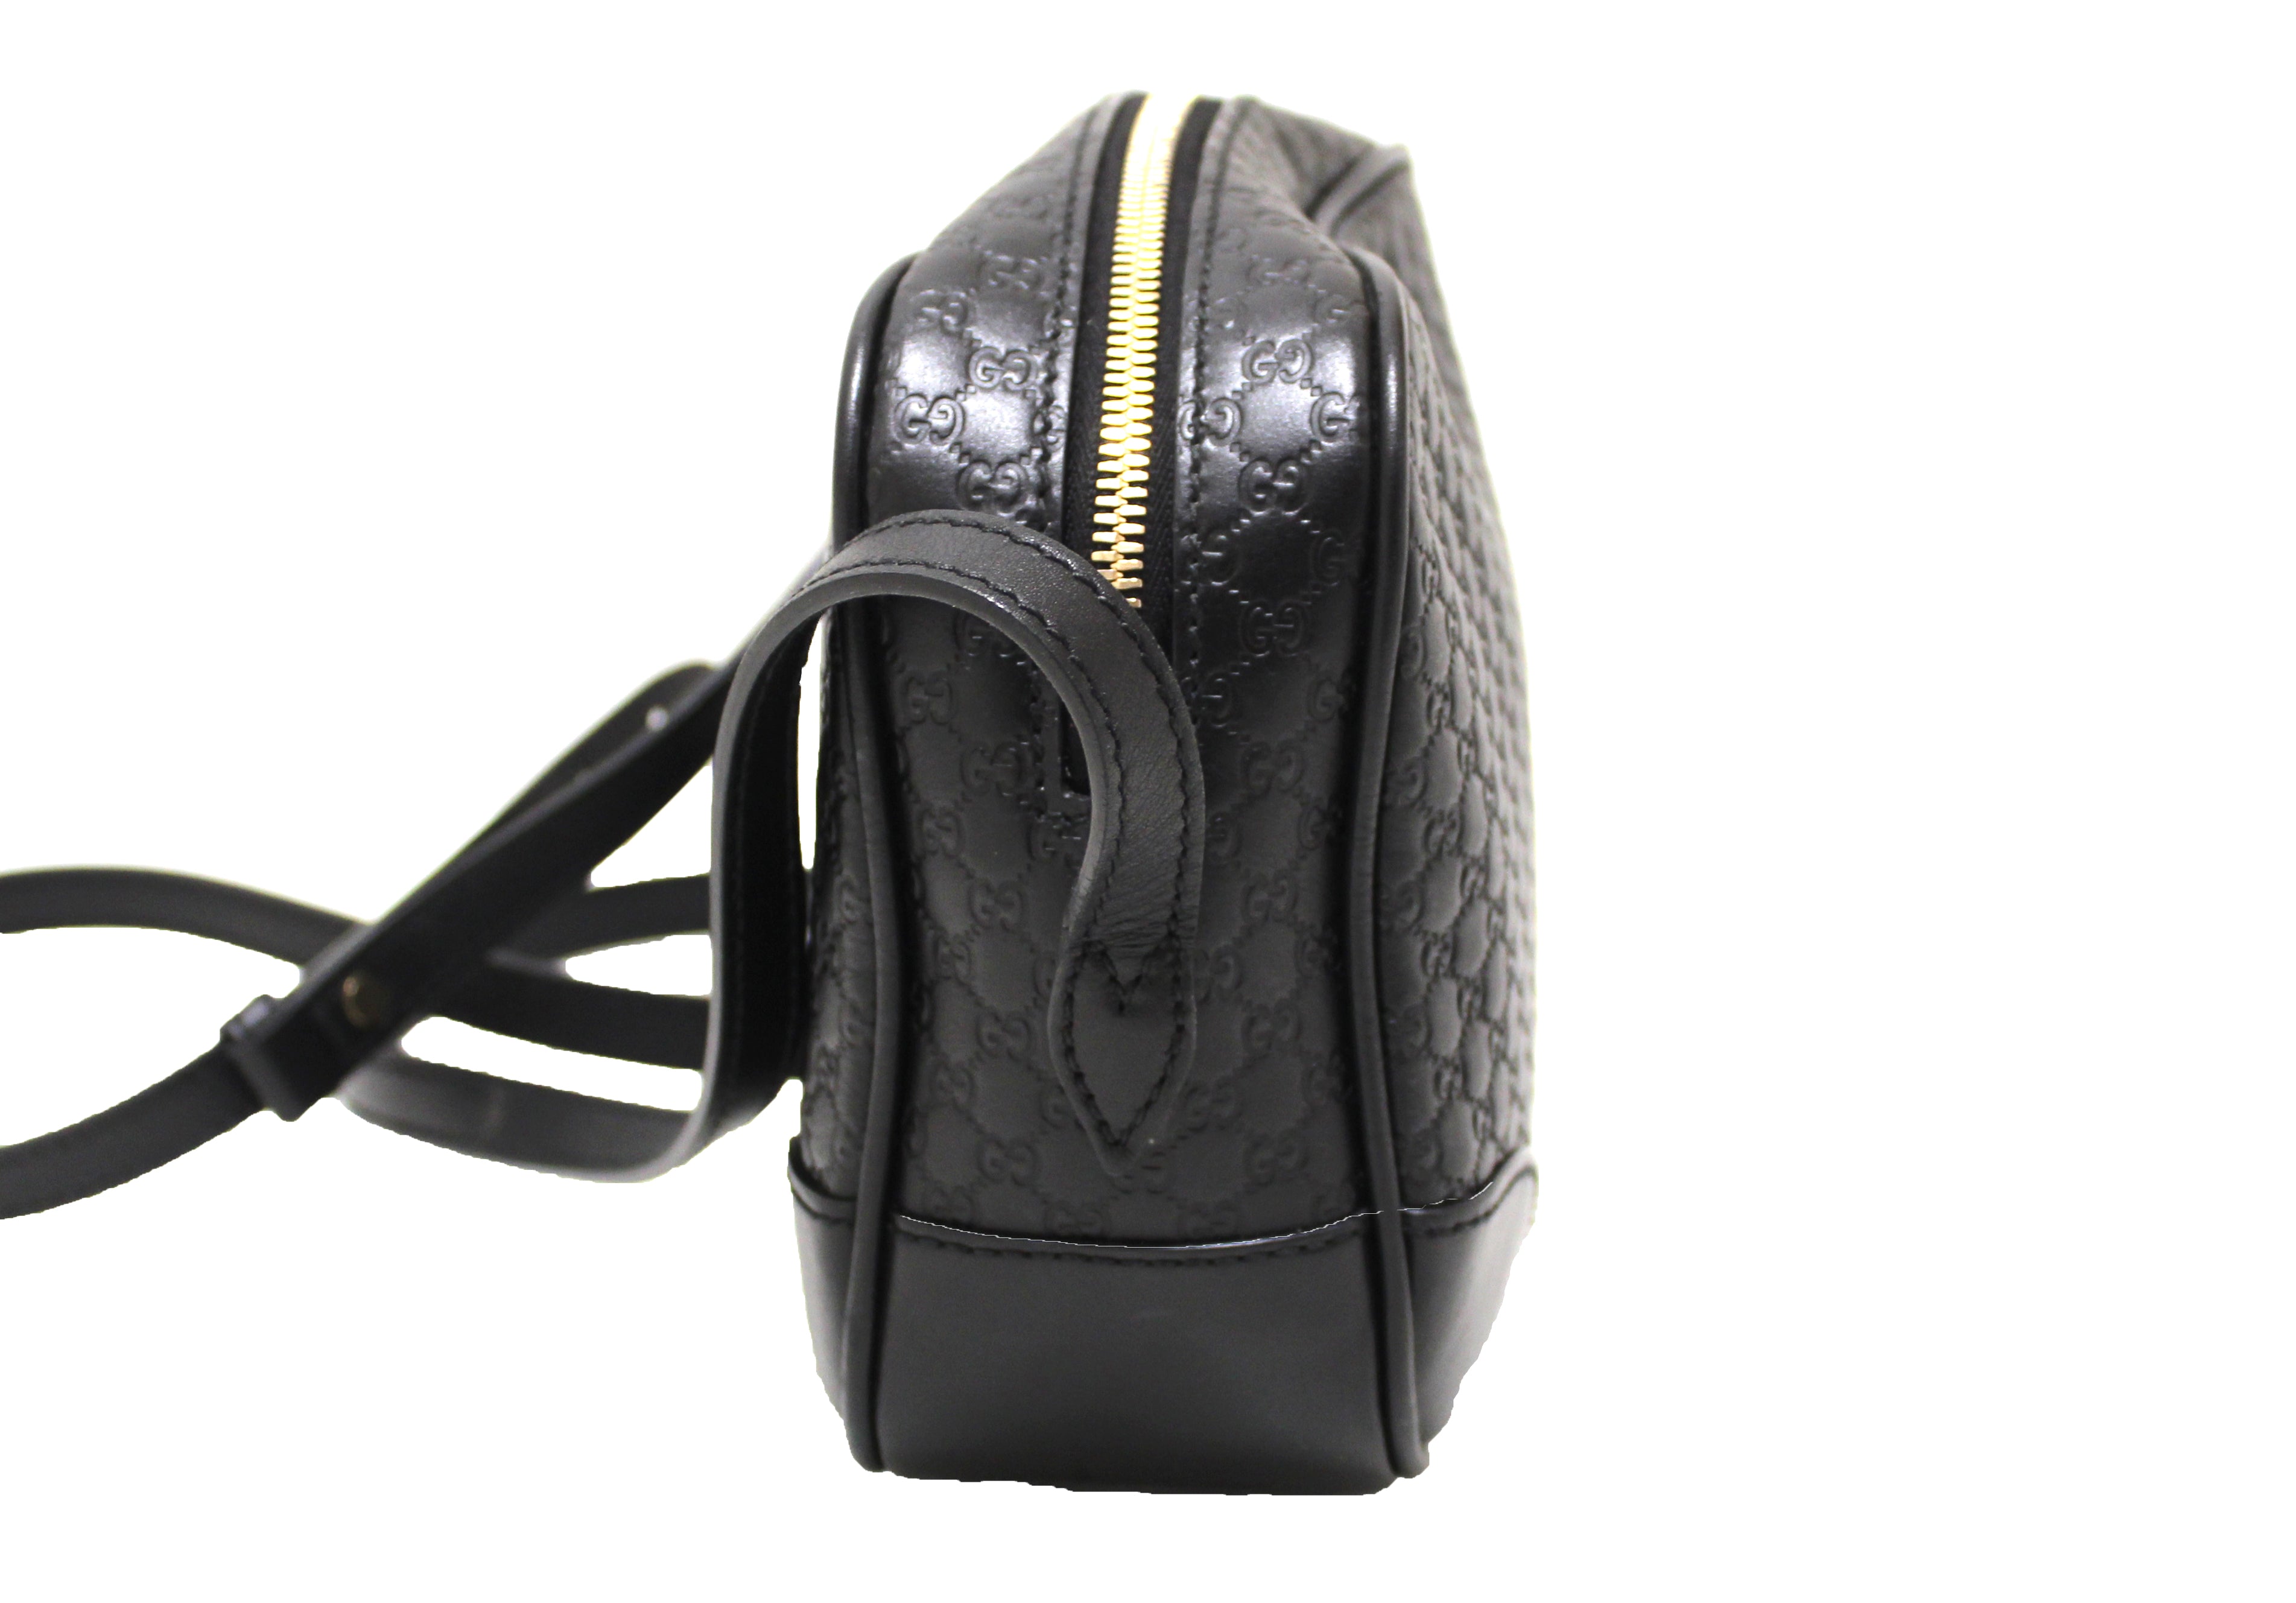 Authentic Black Gucci GG MicroGuccissima Leather Bree Crossbody Bag